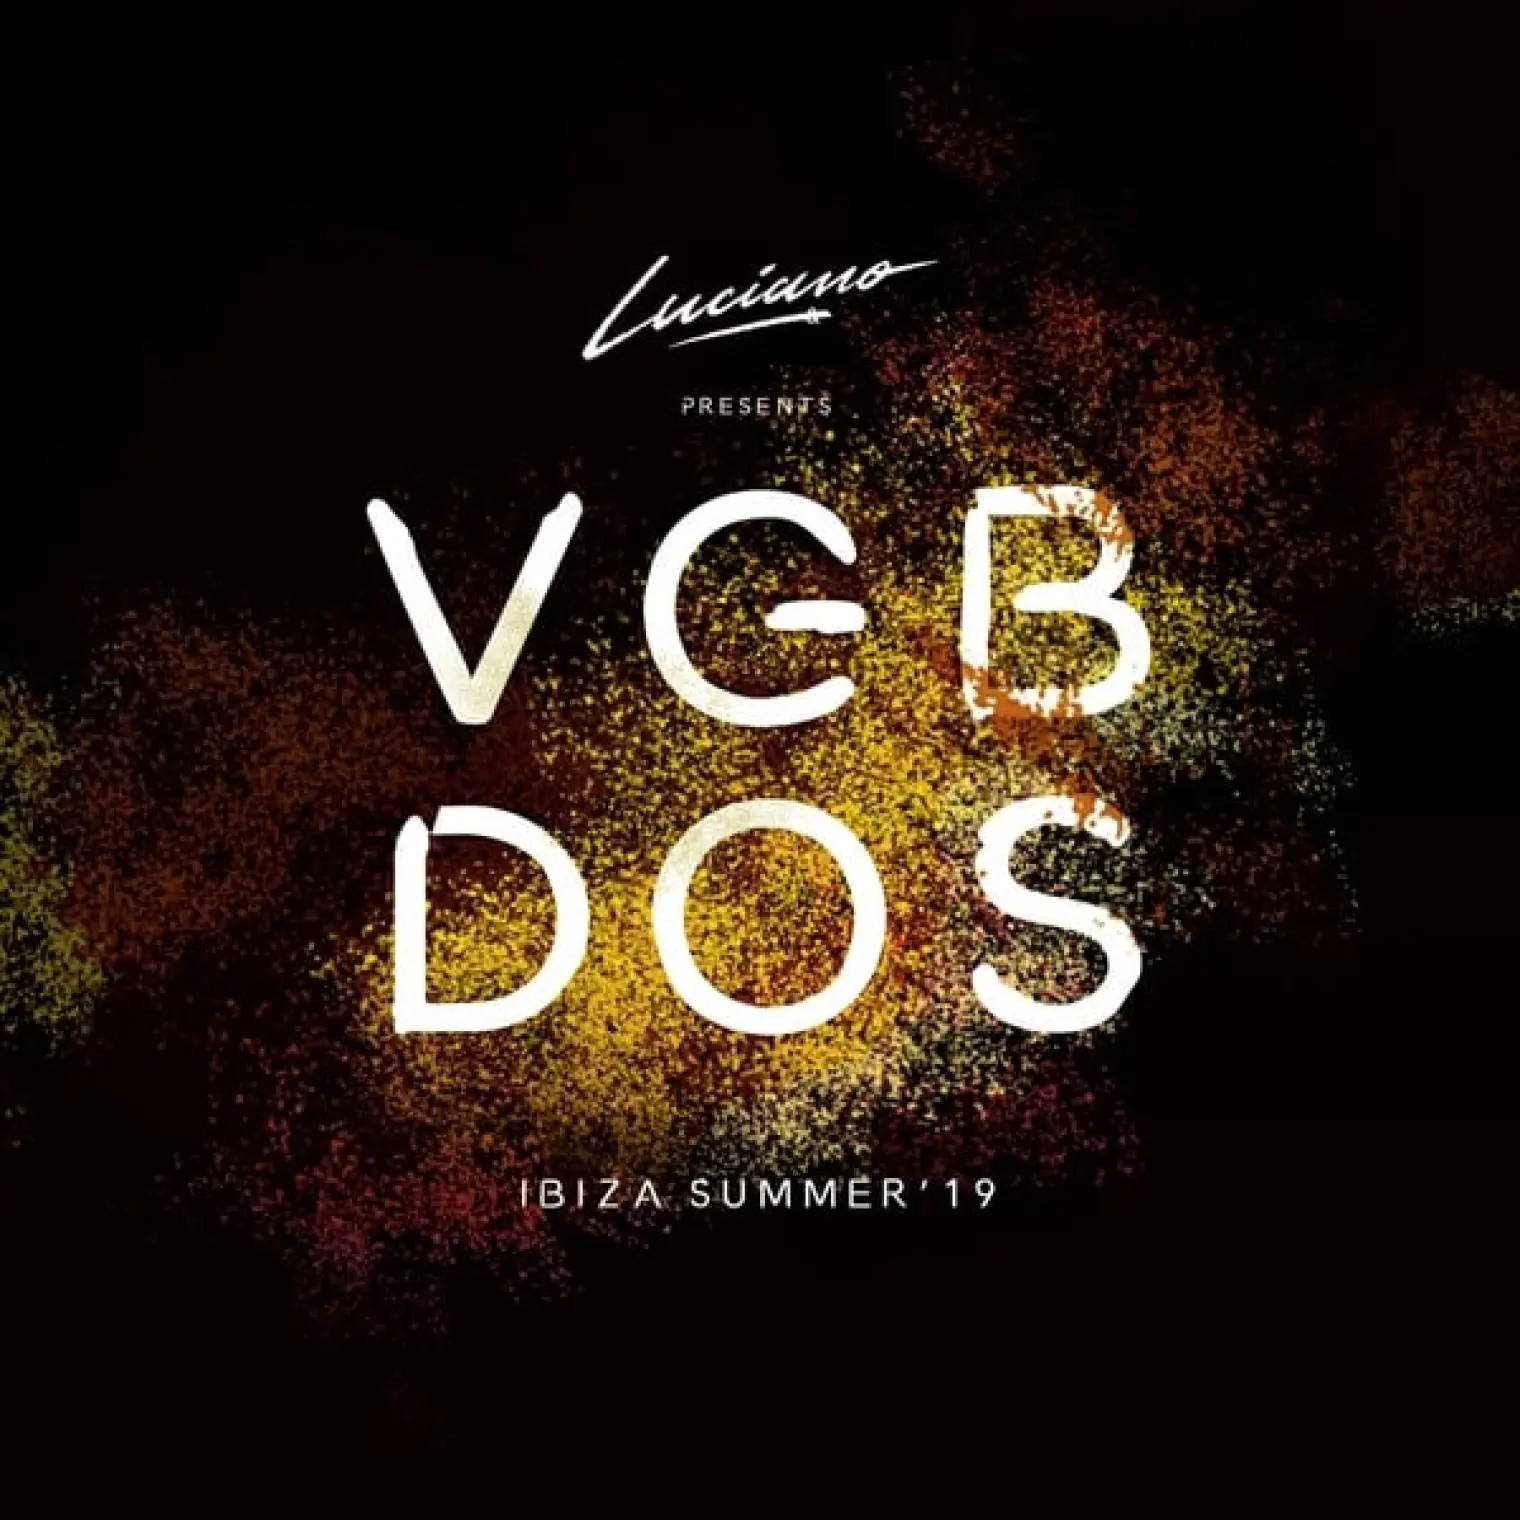 Luciano & Cadenza Presents VGBDOS, Ibiza Summer'19 (Continuous DJ Mix) -  Luciano 